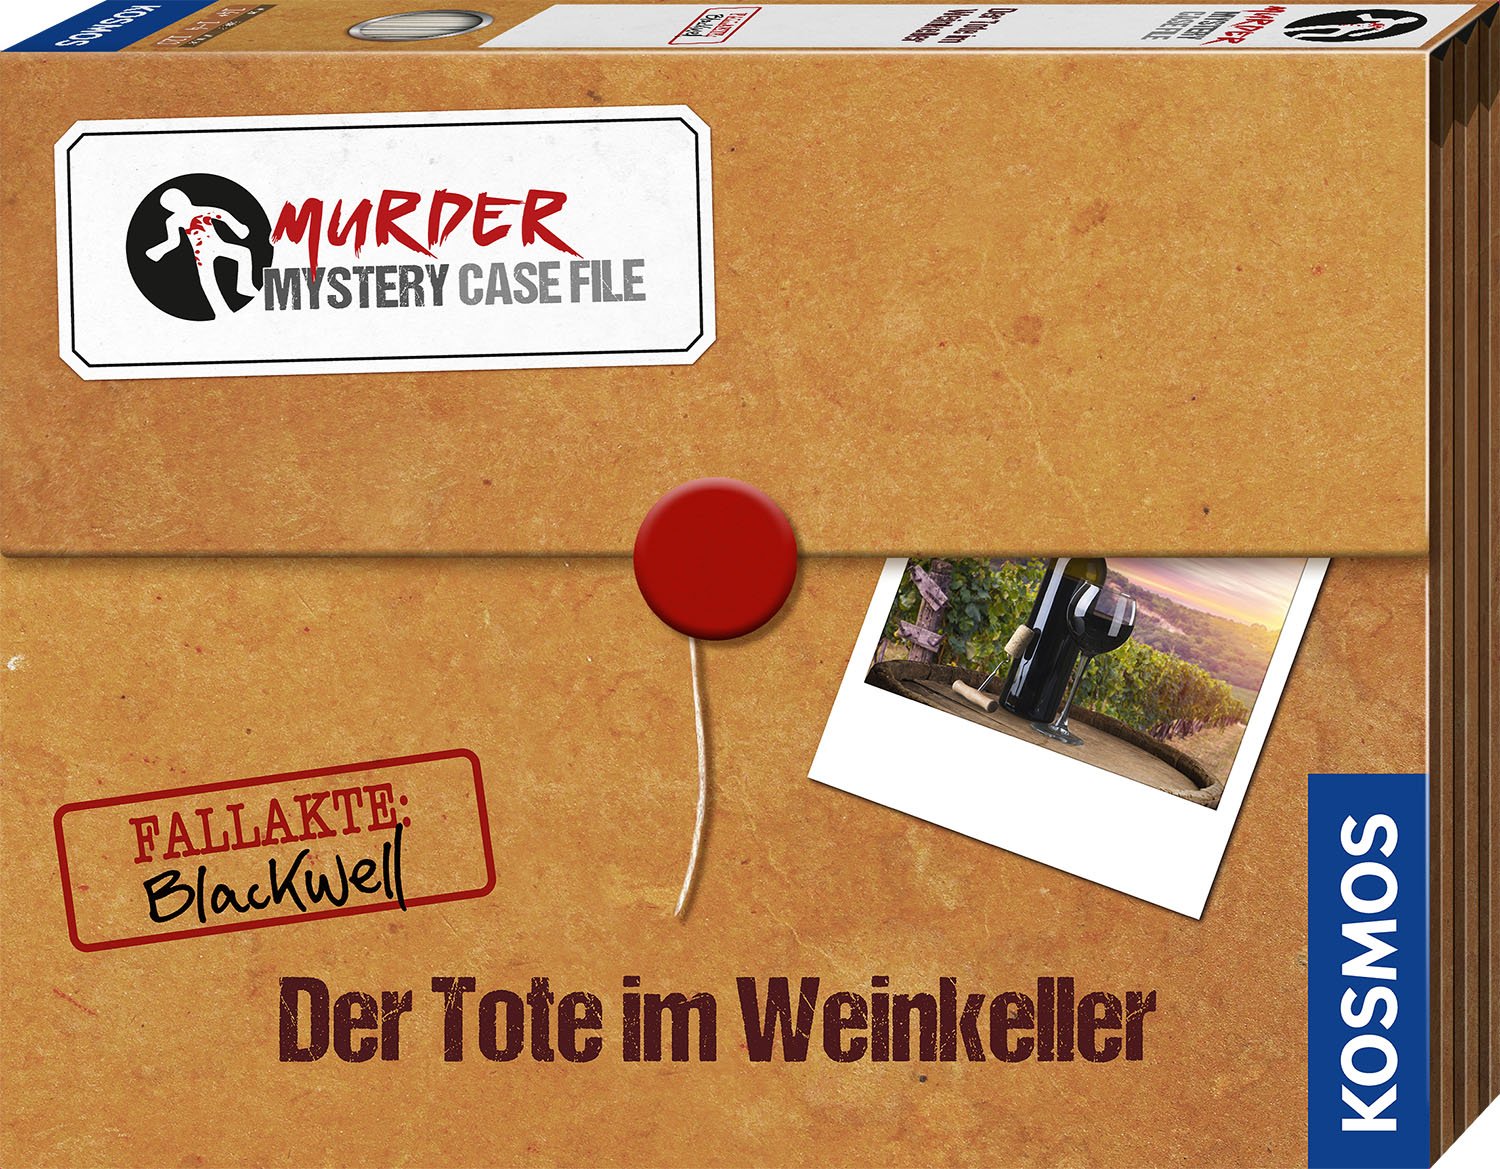 Murder Mystery Case File Der Tote im Weinkeller